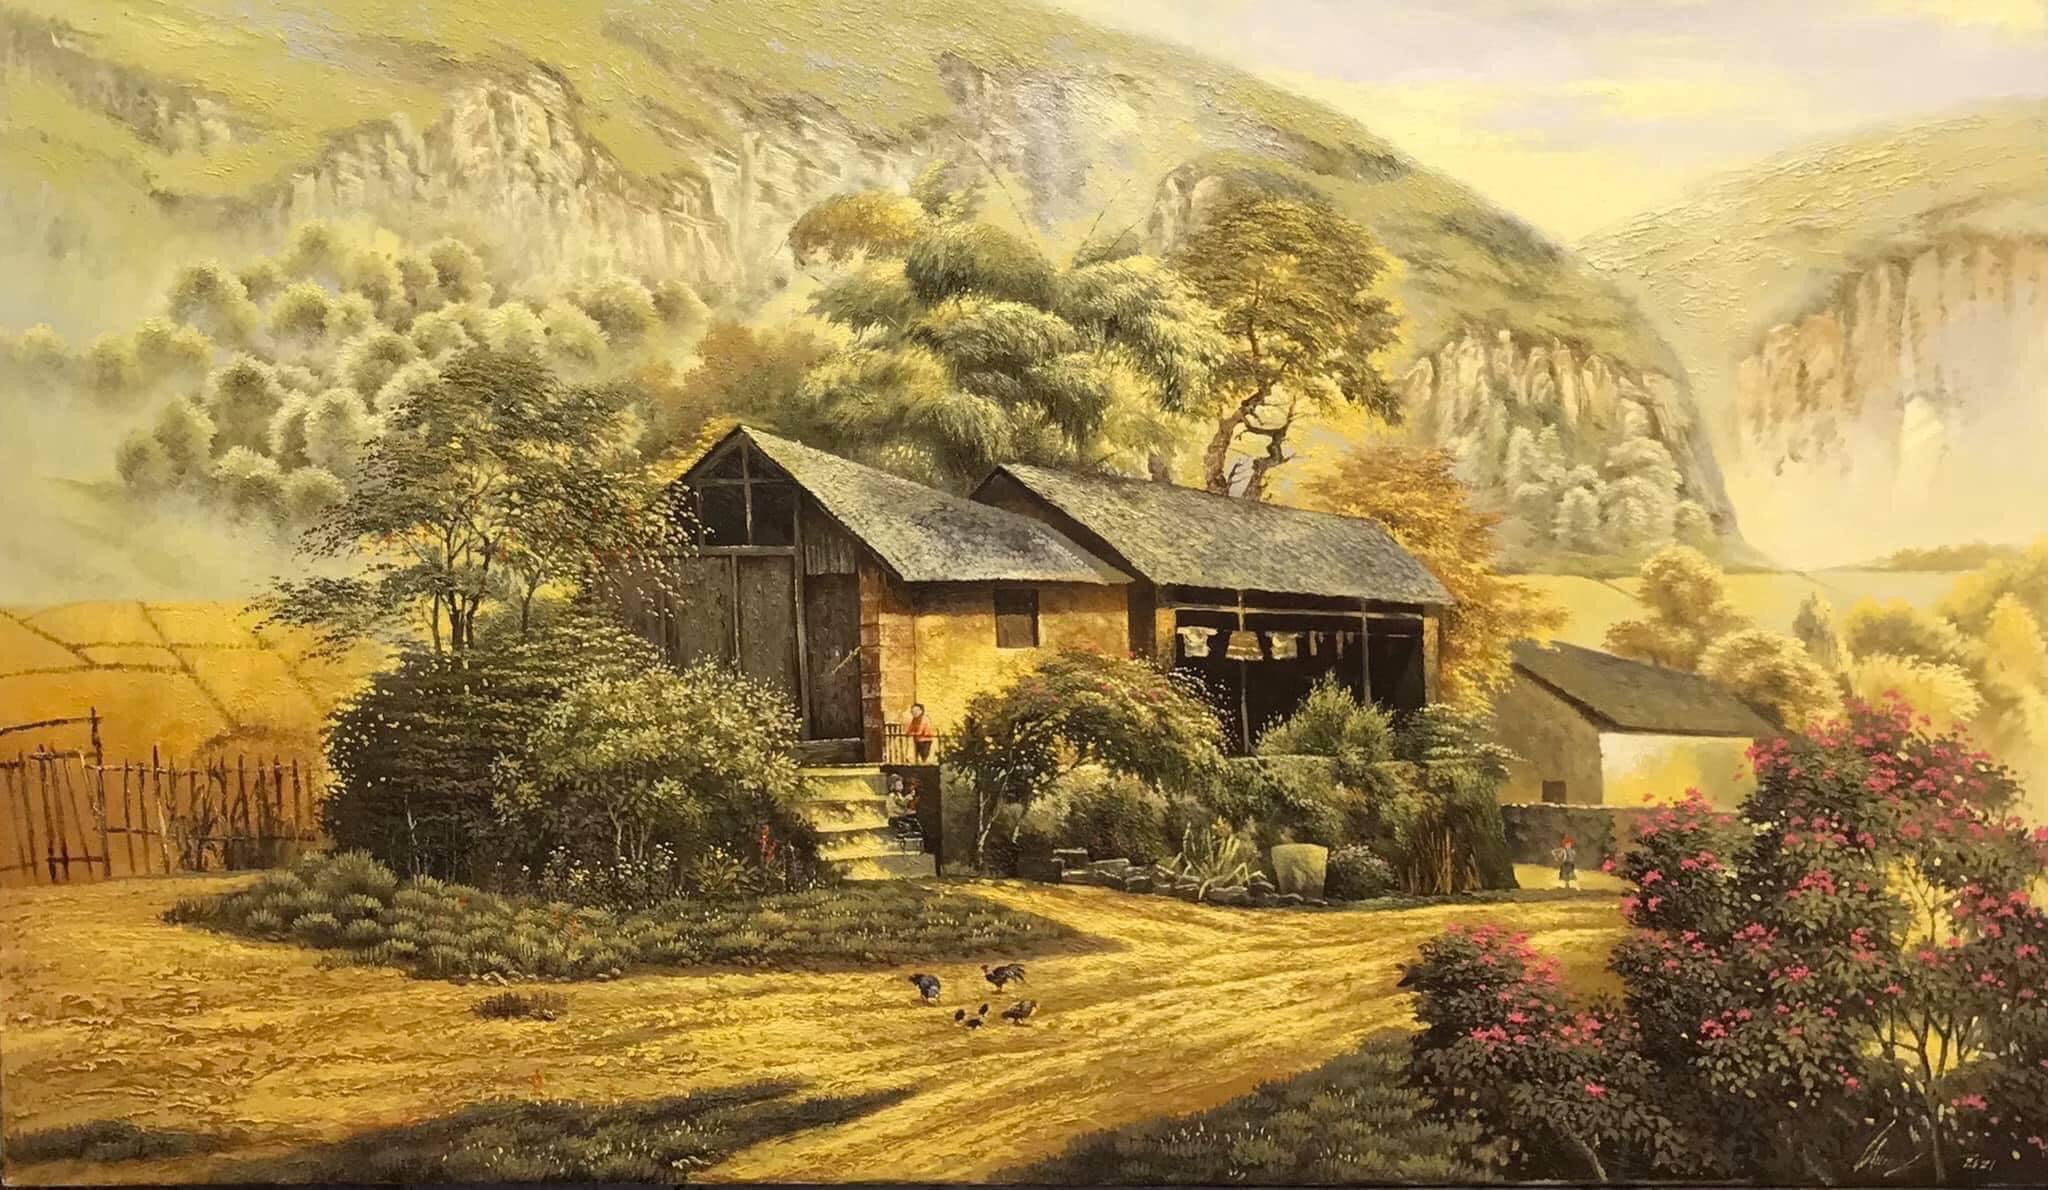 Những góc nhìn khác về phong cảnh làng quê Việt Nam qua tranh sơn dầu 1